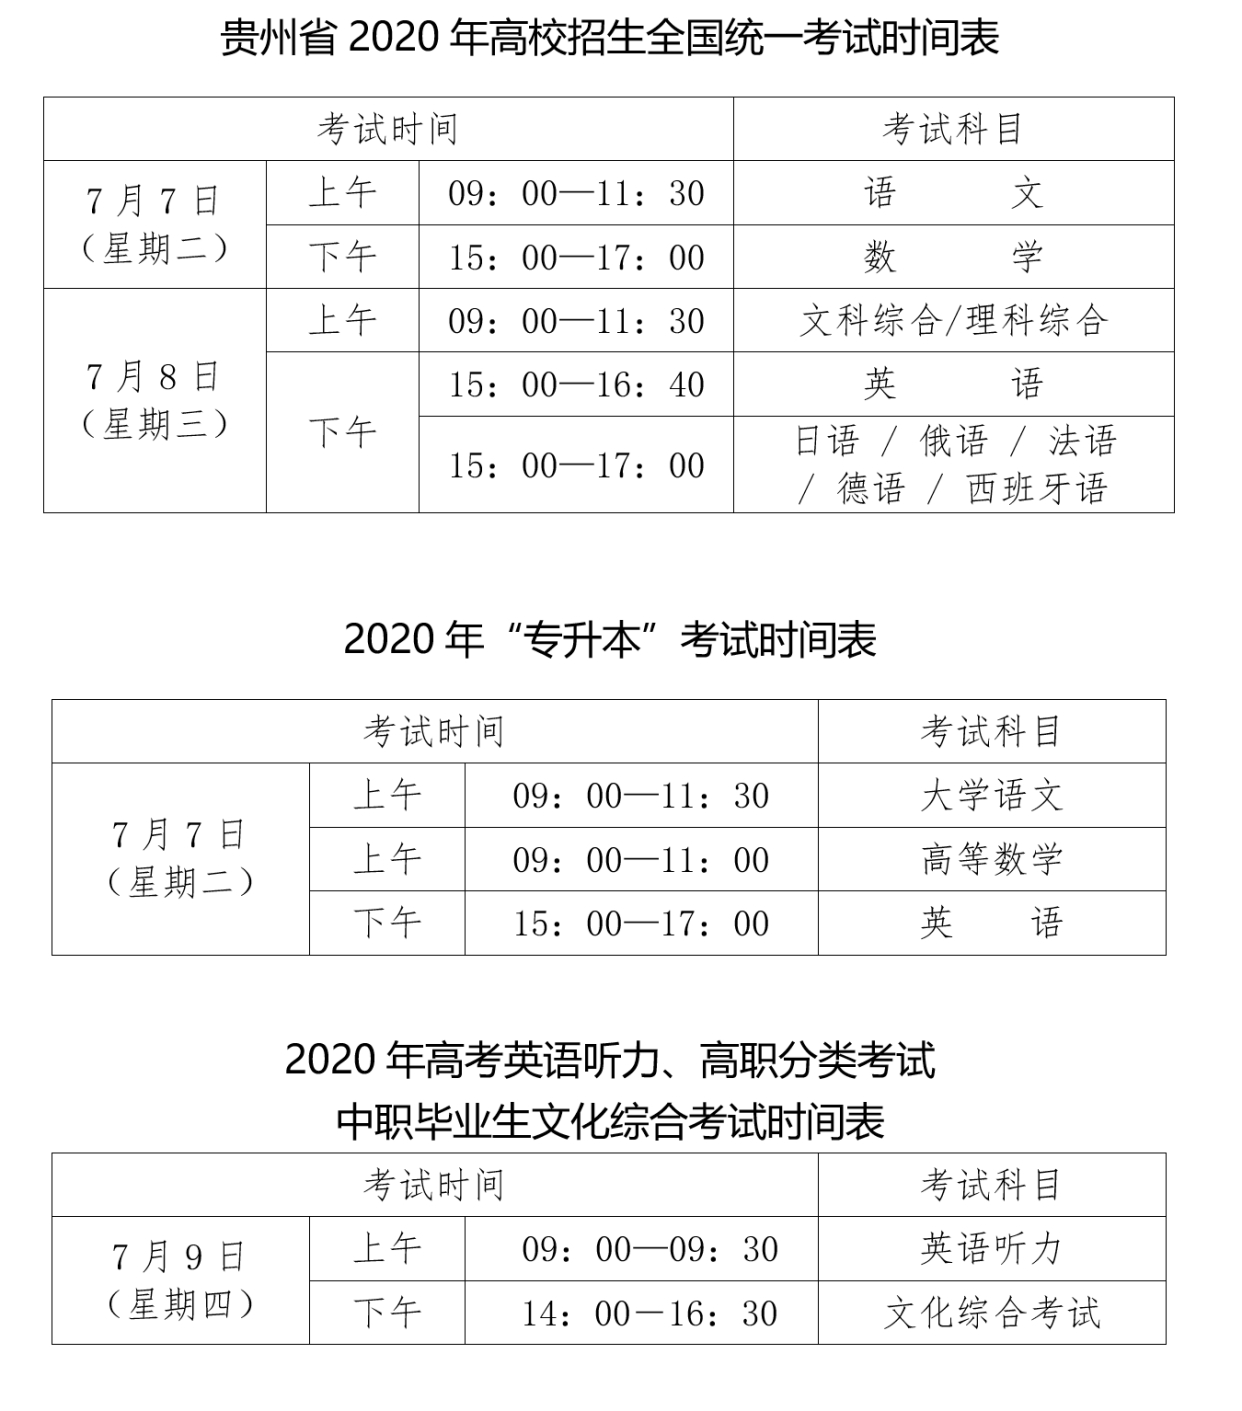 高考报名表贵州图片